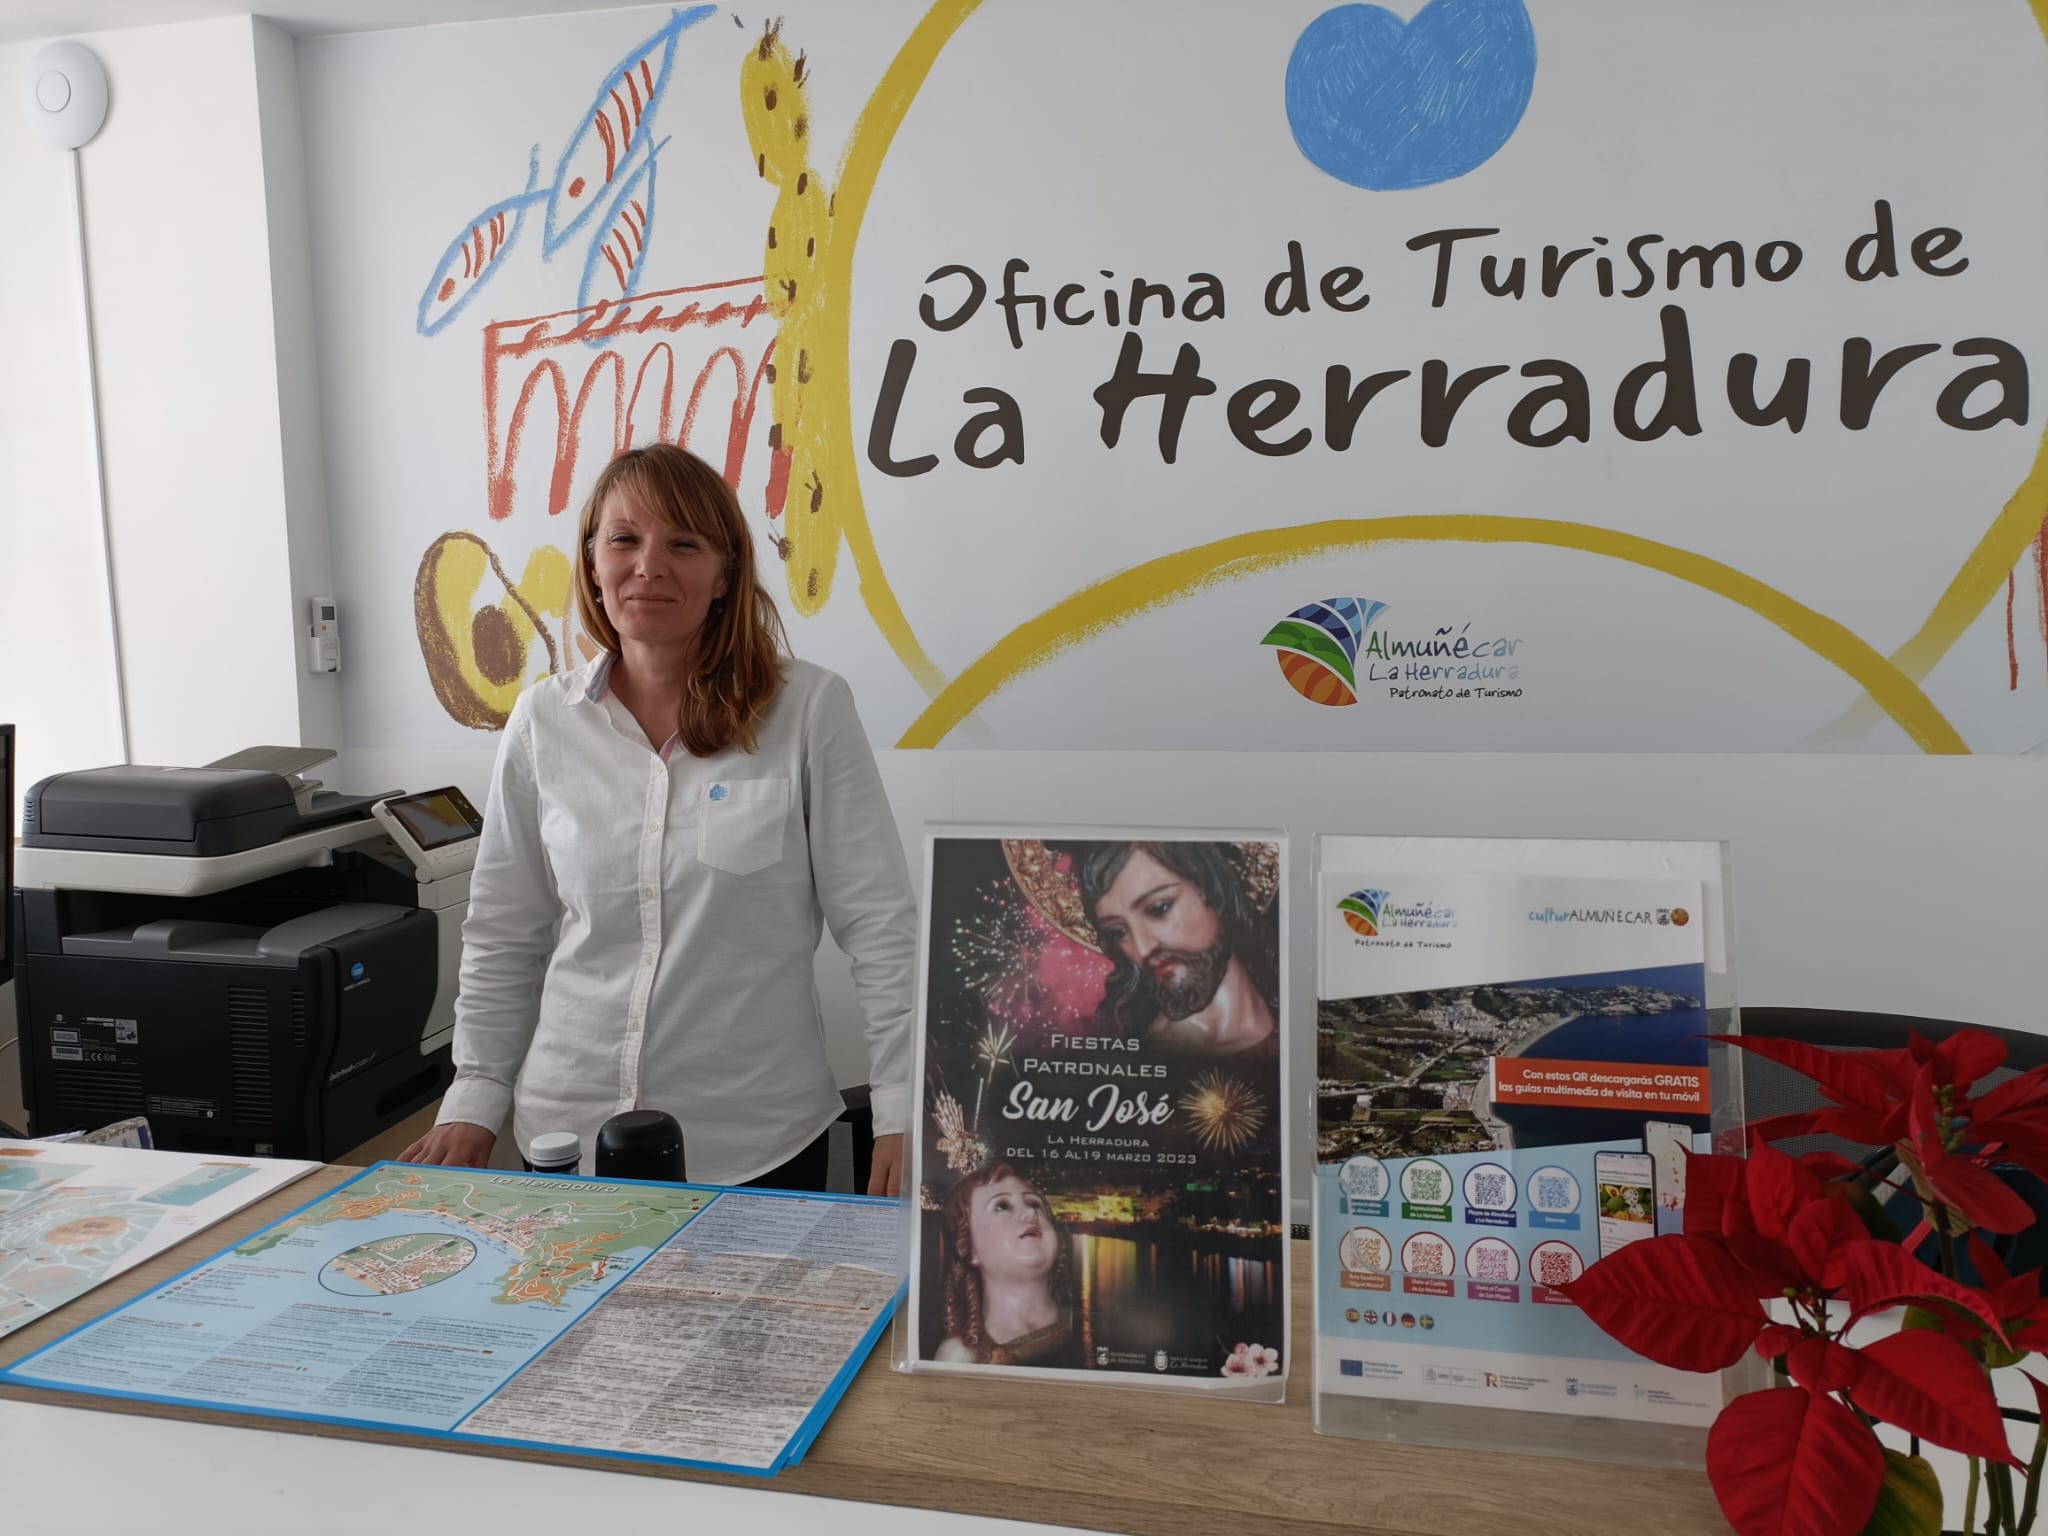 Llegan los nuevos horarios de otoño a las oficinas de turismo de Almuñécar y La Herradura desde esta semana 